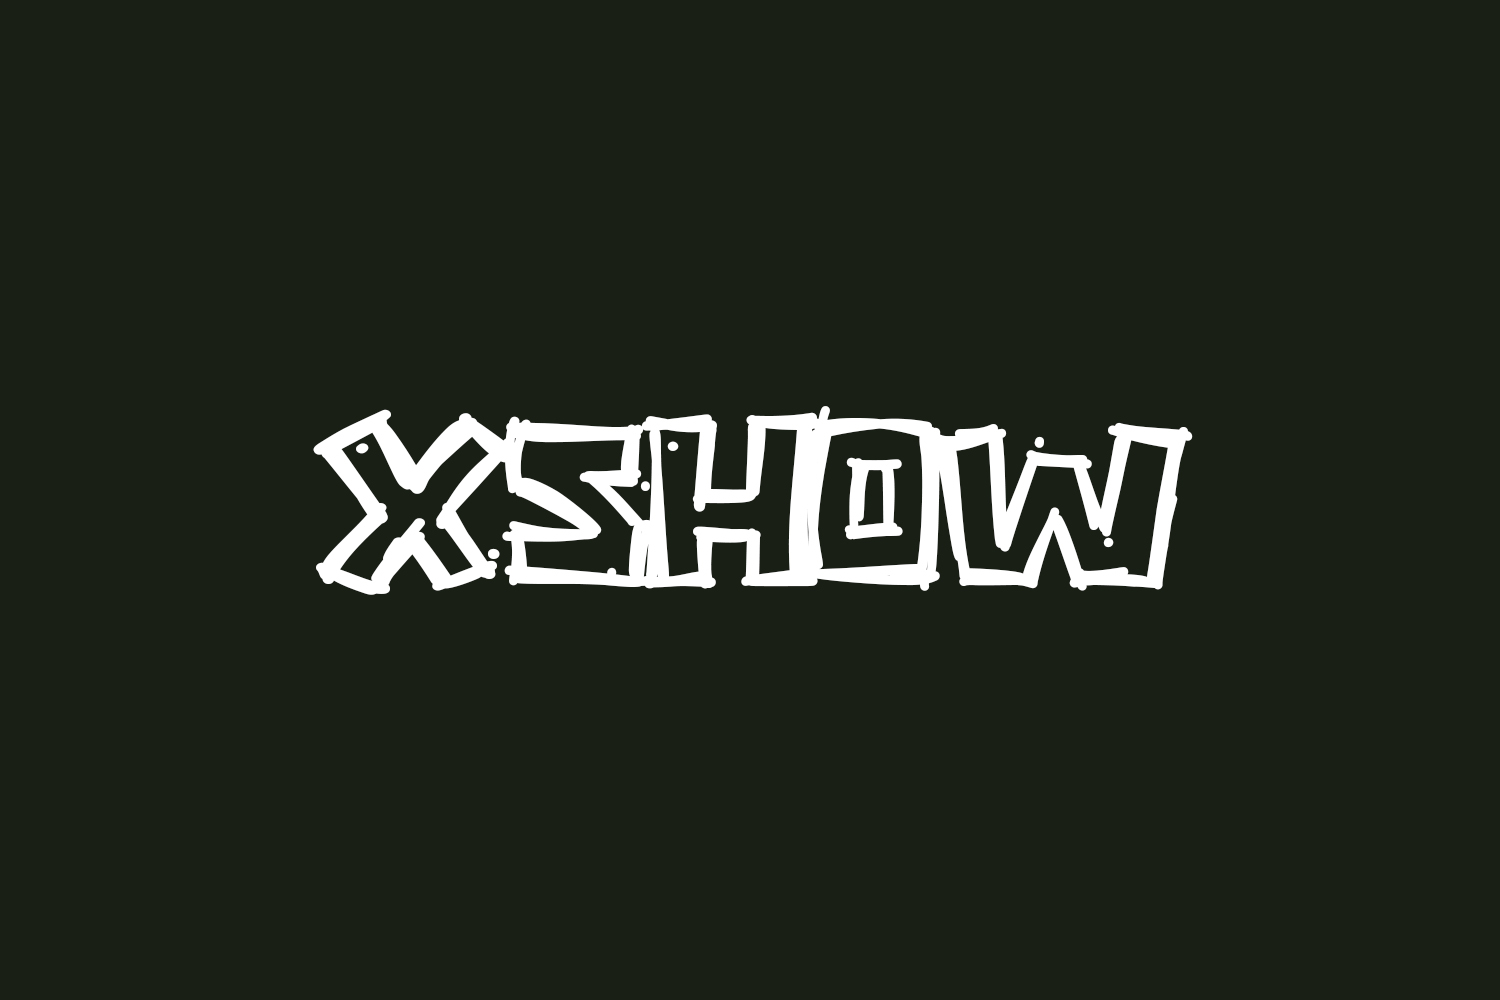 Xshow Free Font